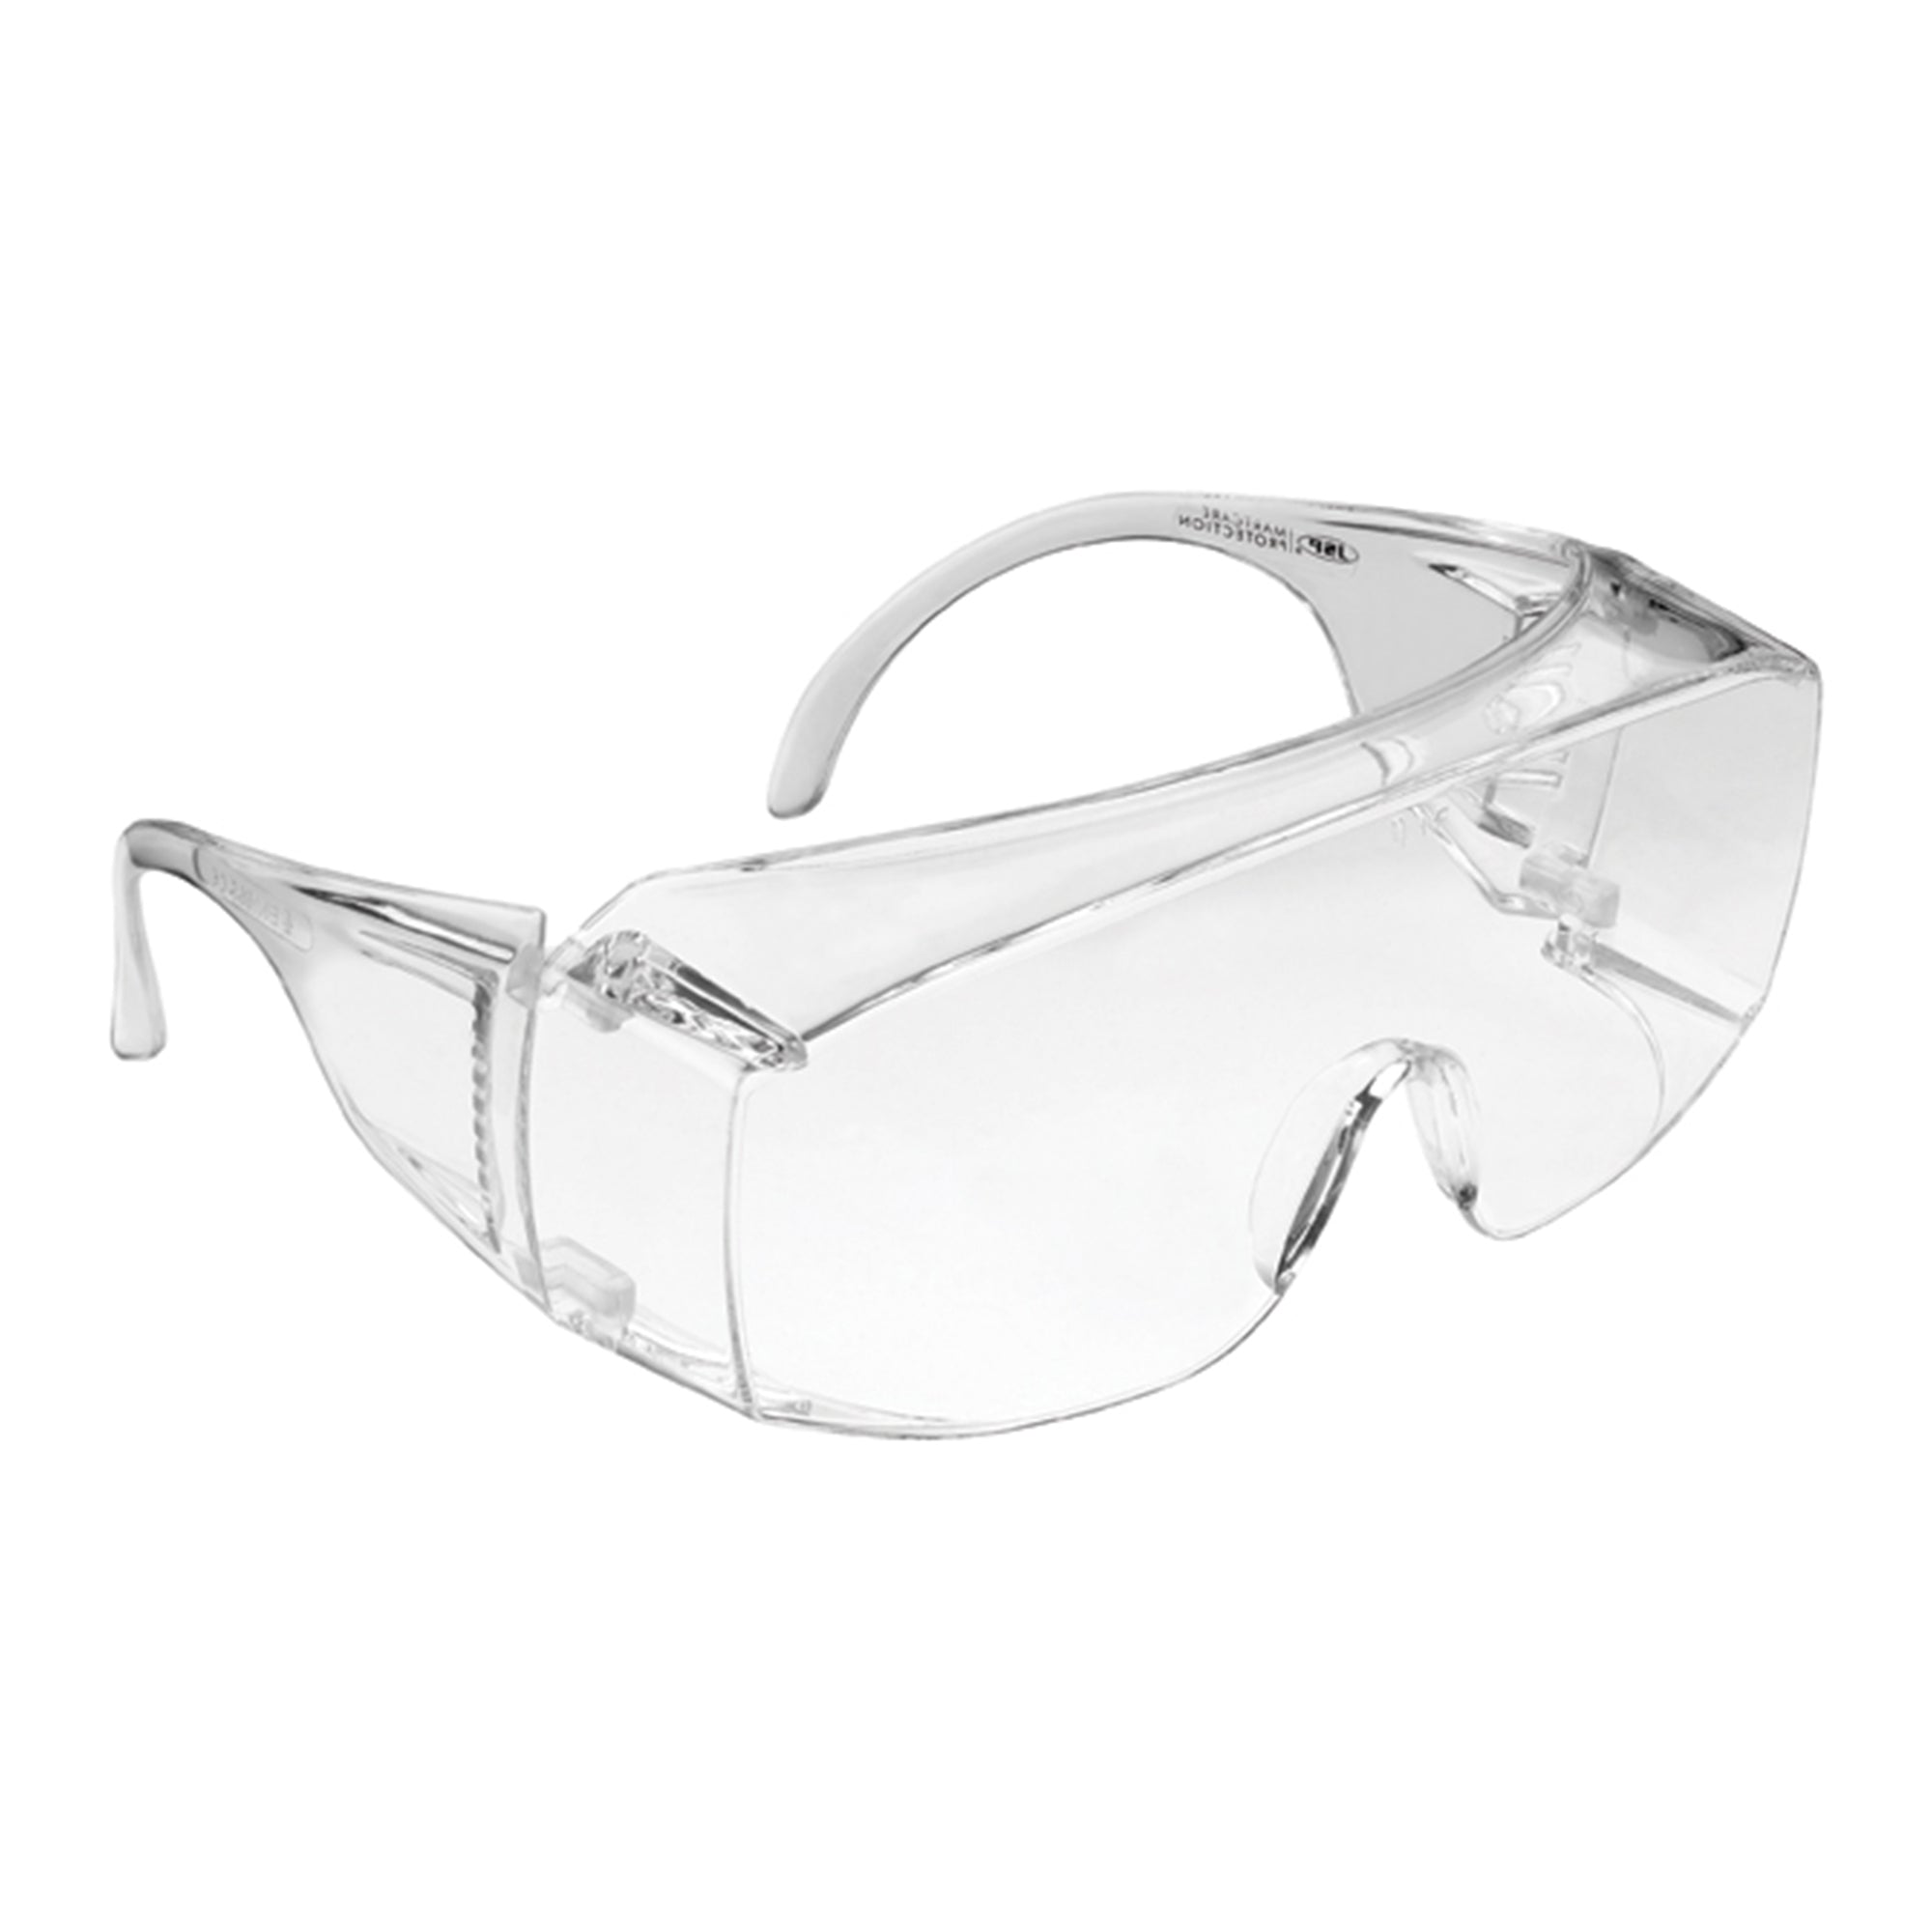 JSP M9300 Overspec Clear Lens Safety Glasses